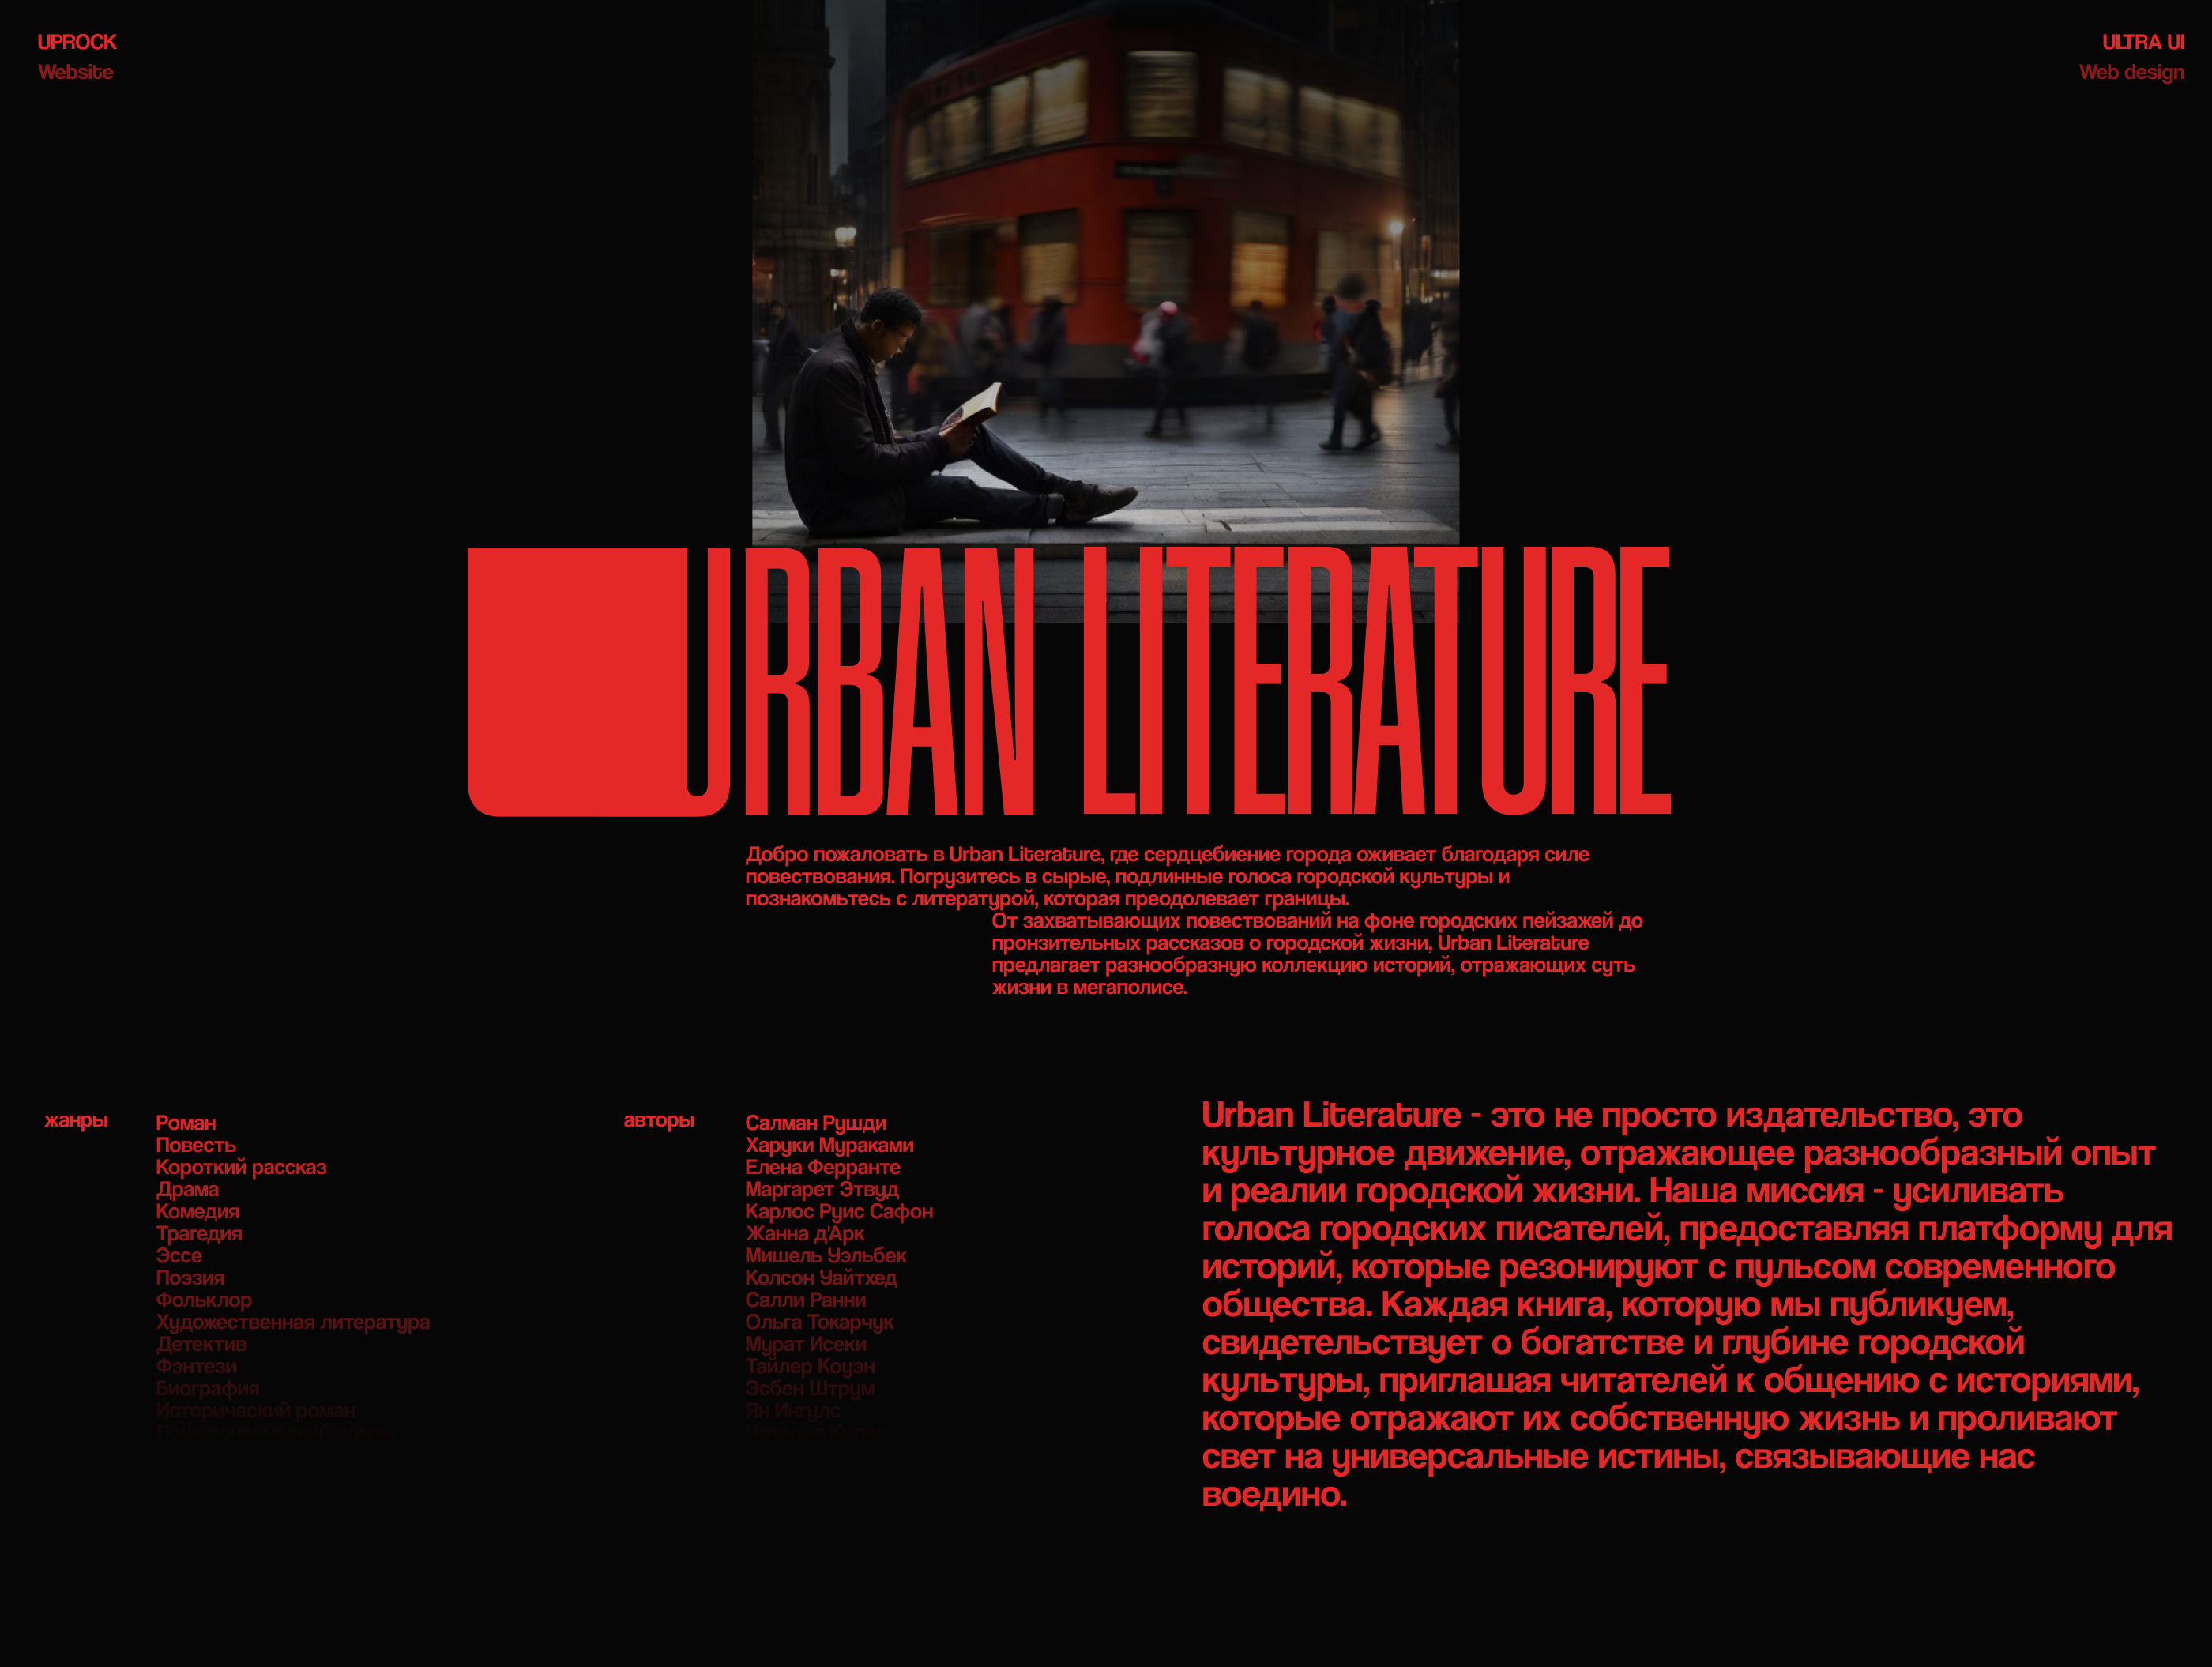 Urban Literature — Изображение №1 — Интерфейсы, Брендинг на Dprofile